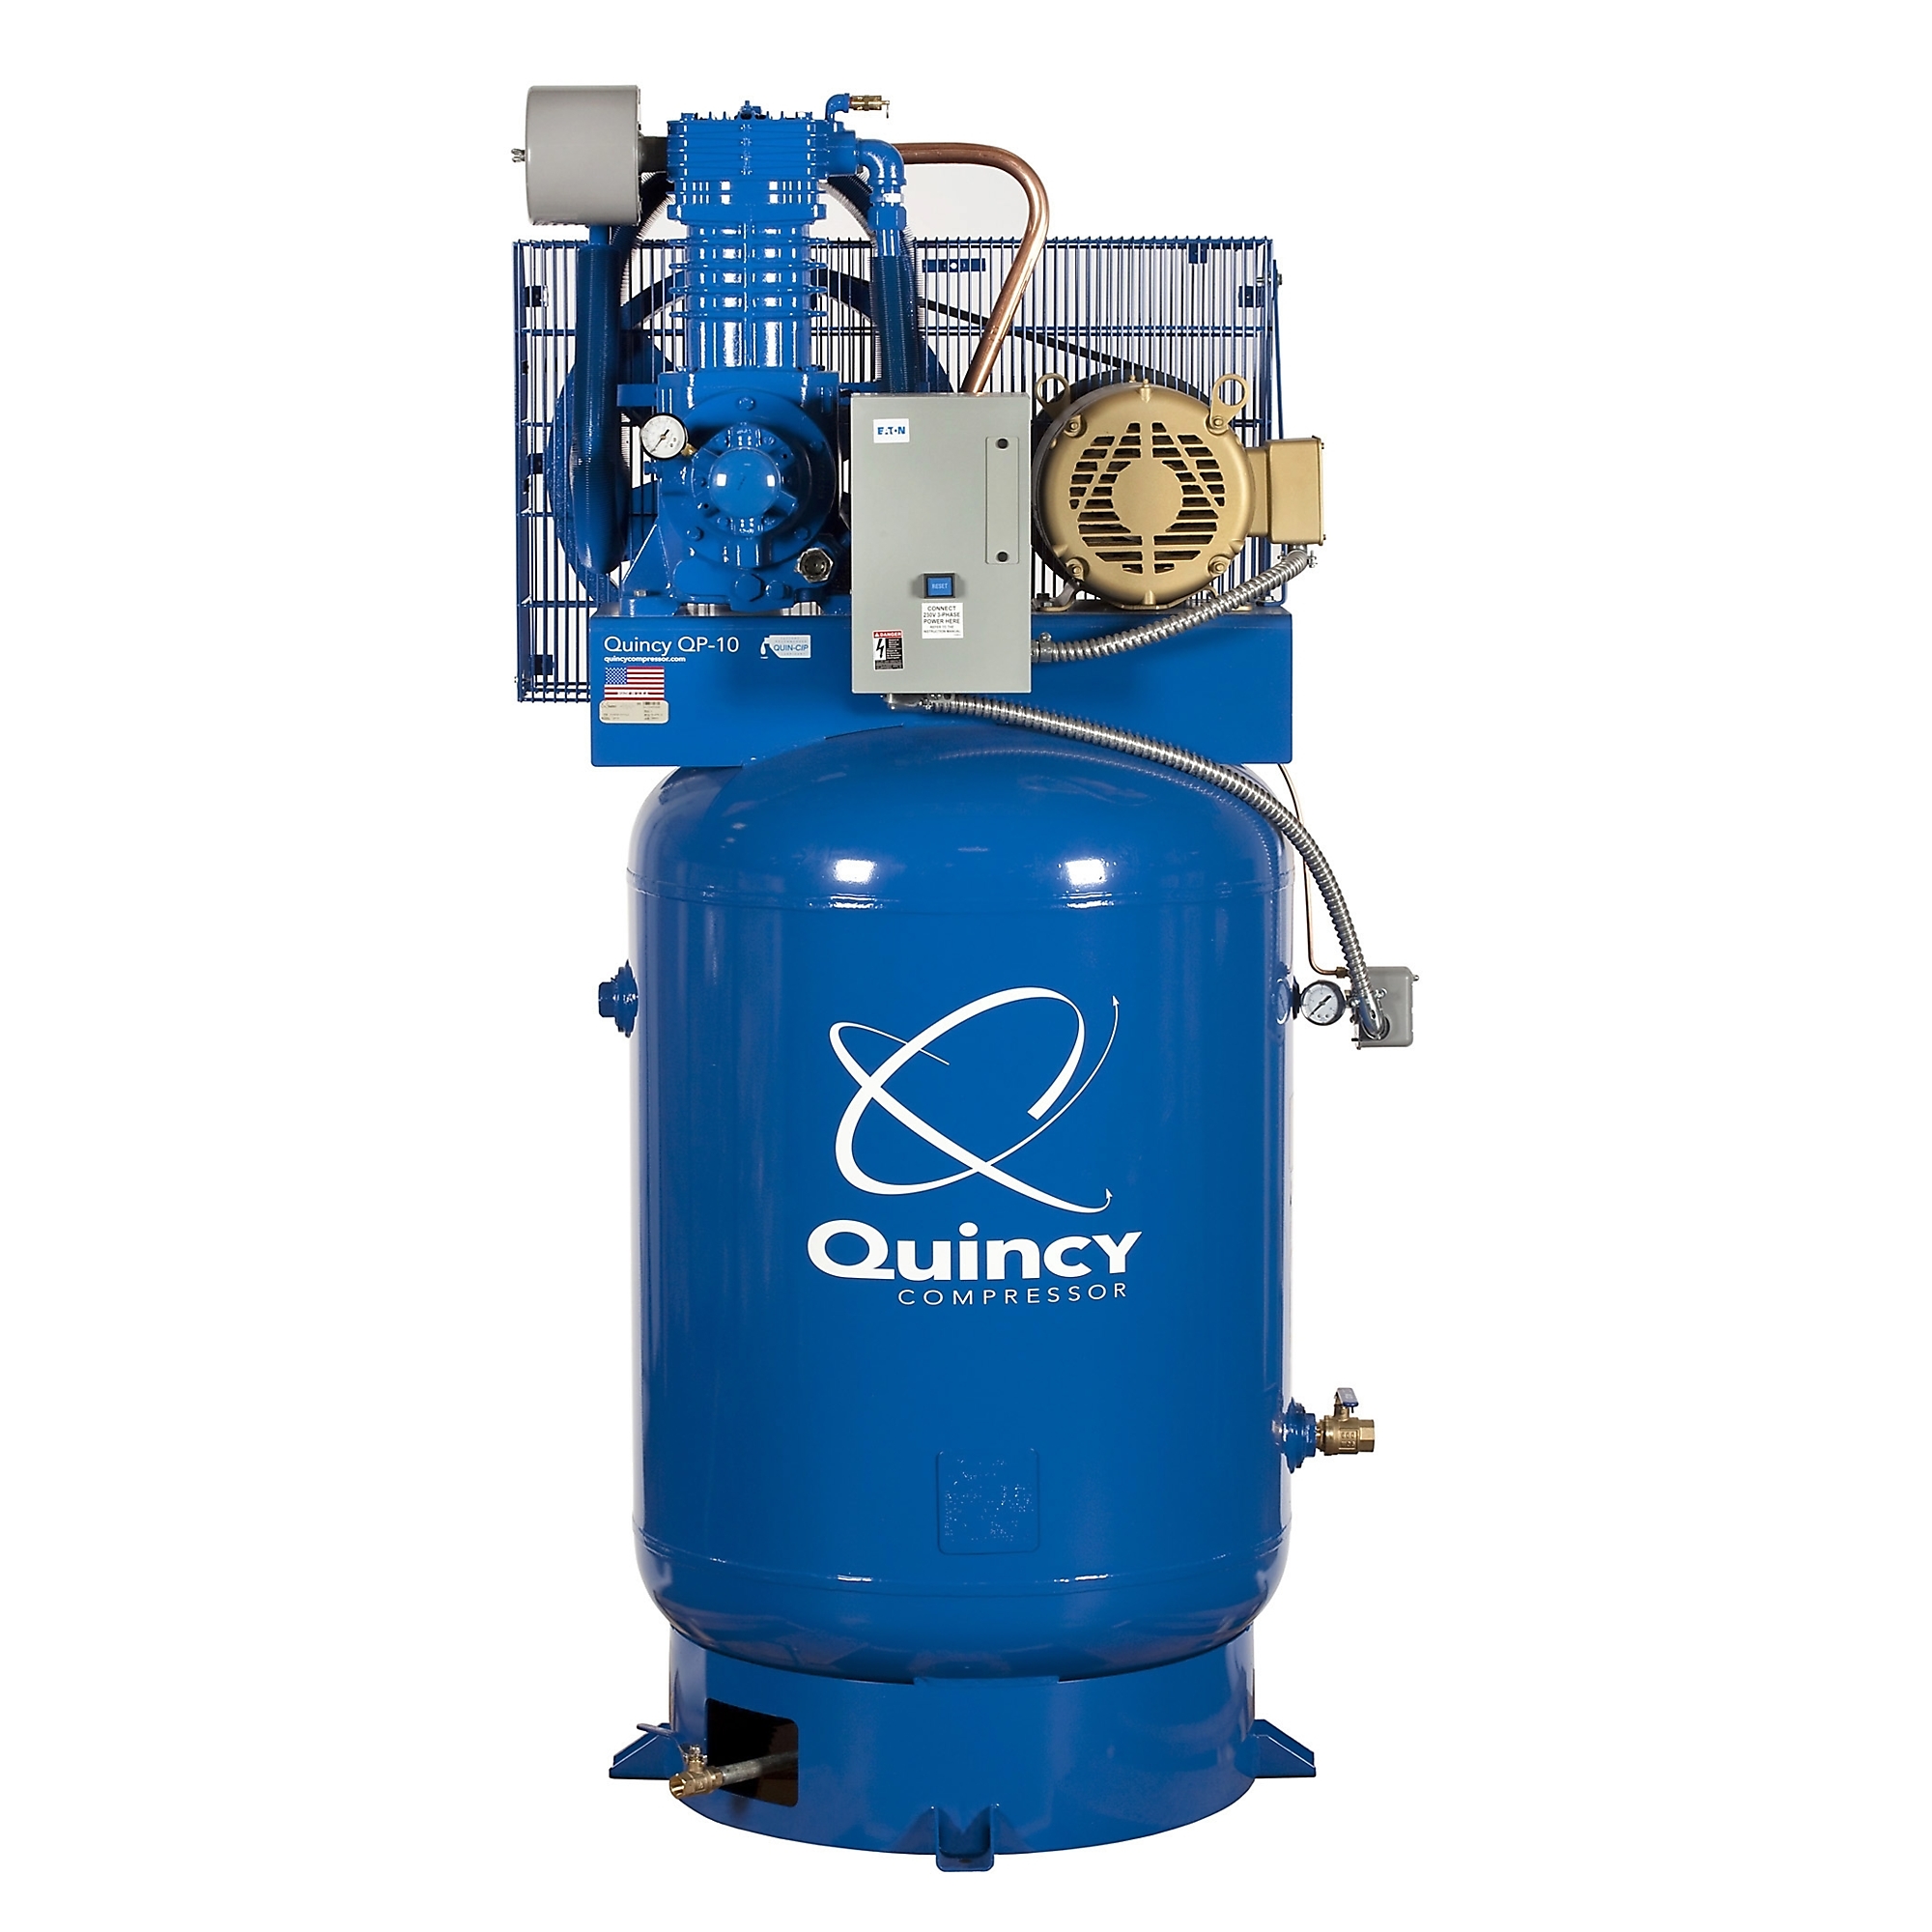 Quincy Compressor 2020040789